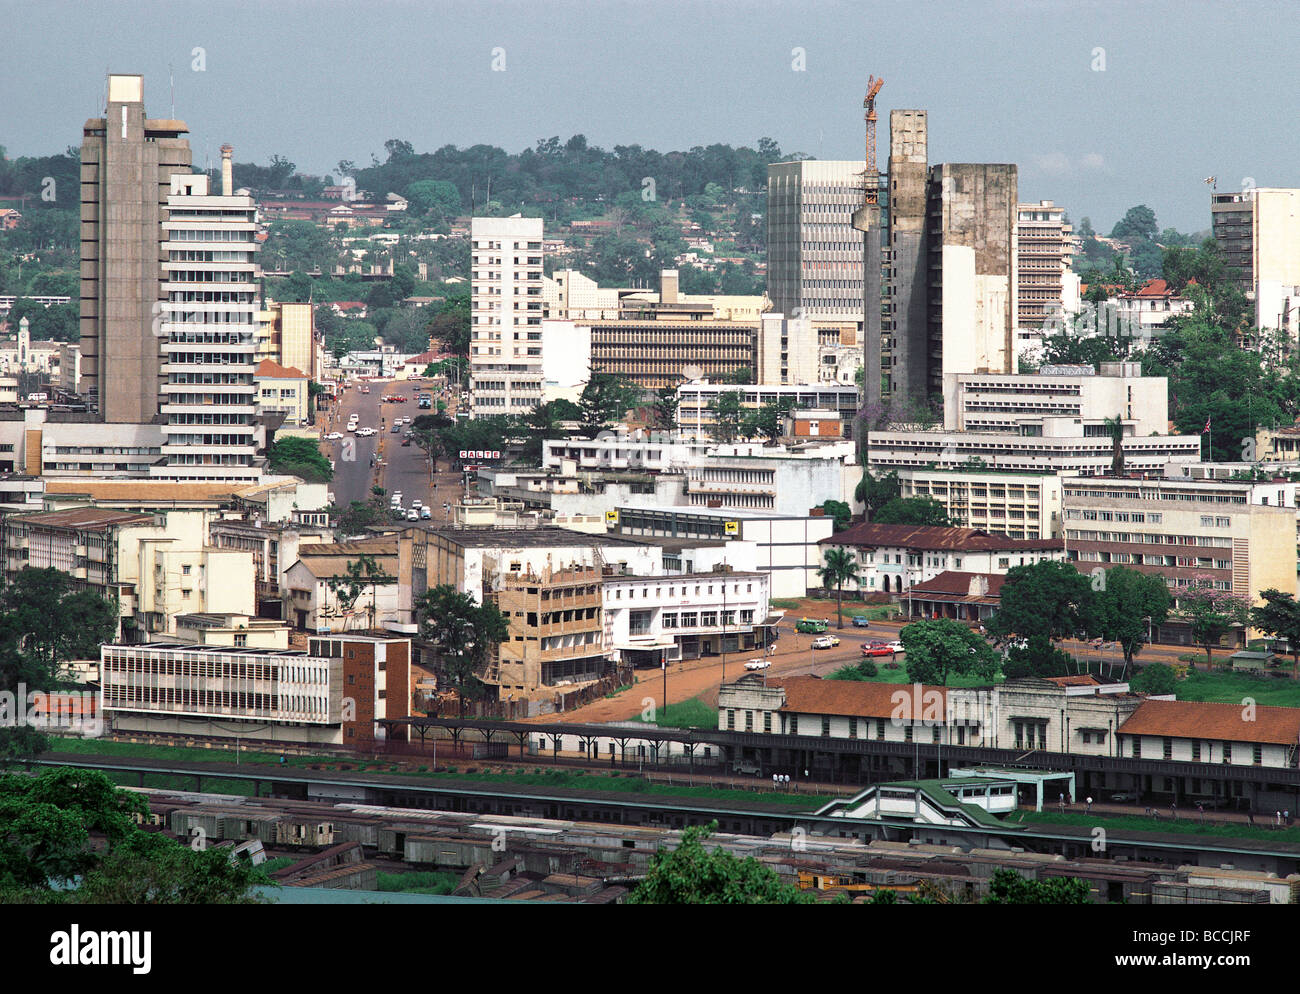 La stazione ferroviaria e il moderno alto alti edifici isolati di uffici negozi e abitazioni a Kampala in Uganda Africa orientale Foto Stock